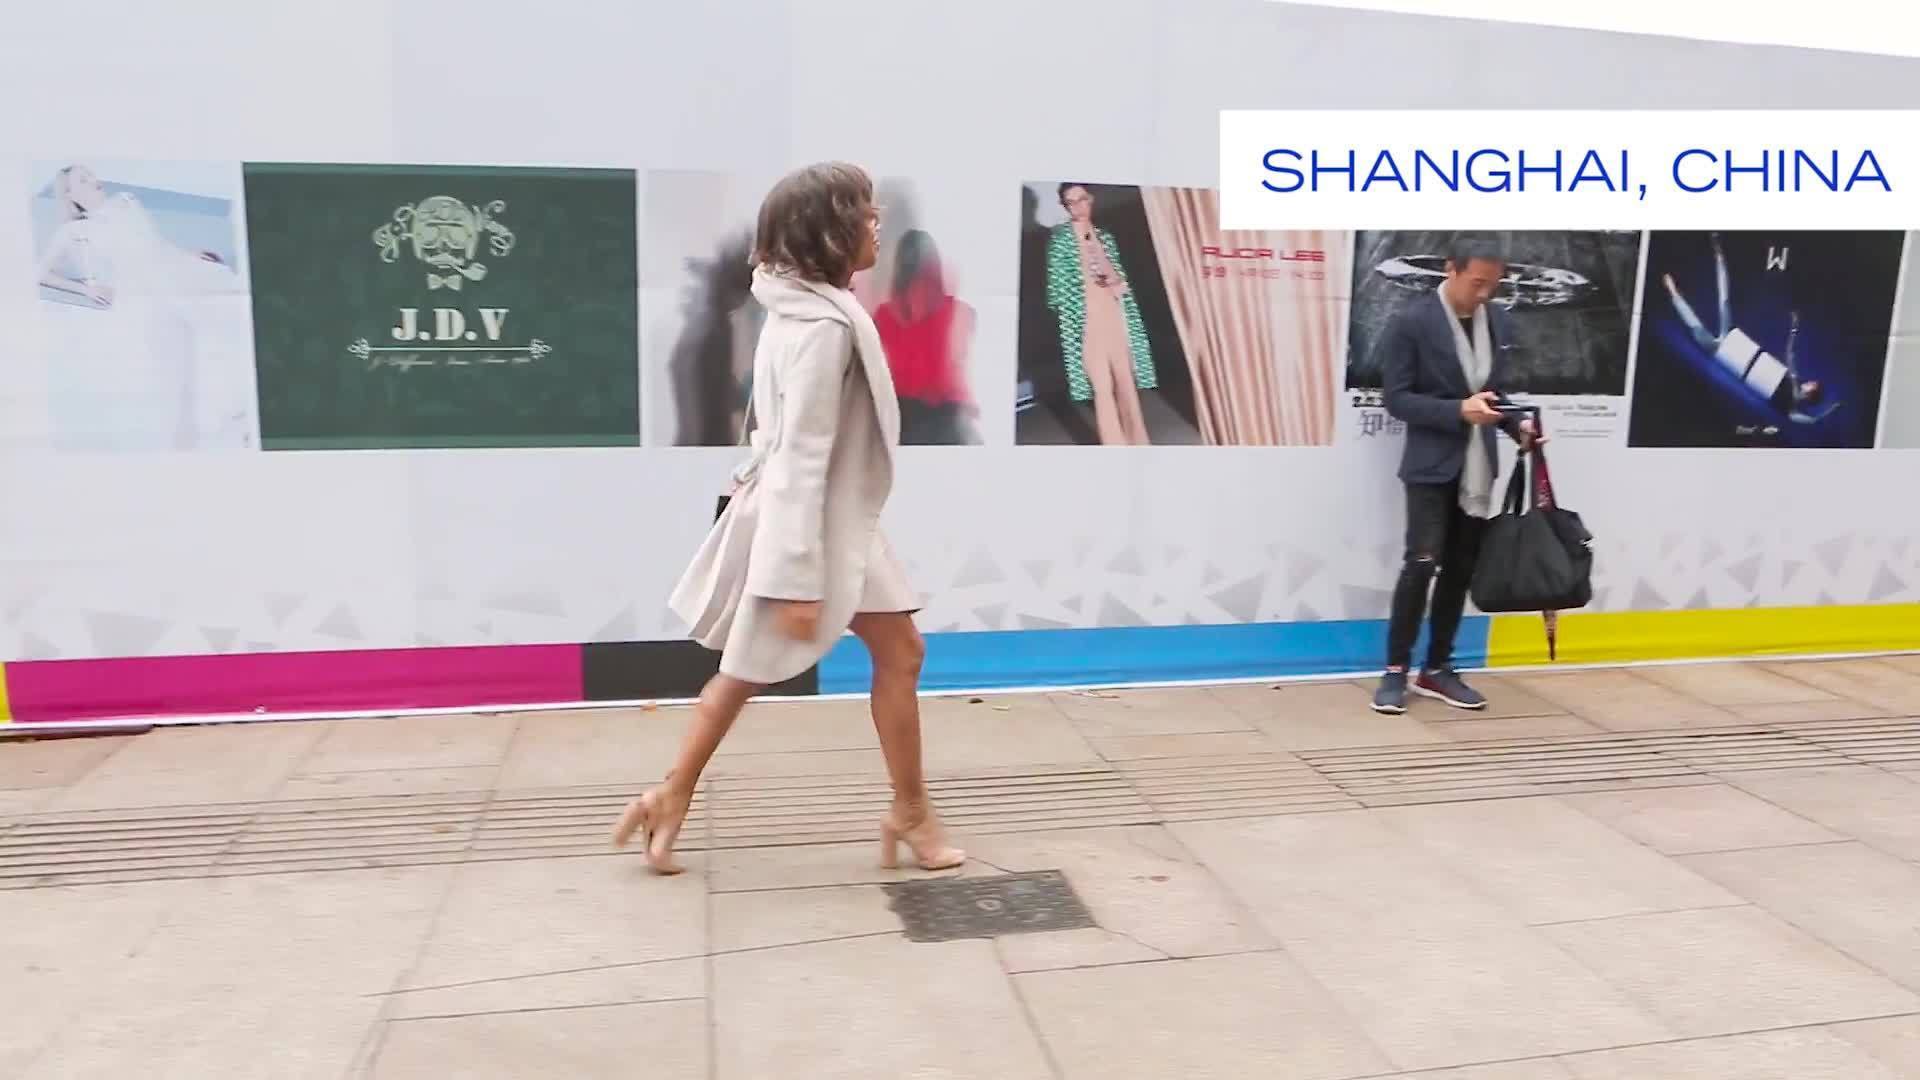 Shanghai Fashion Show - Part 1